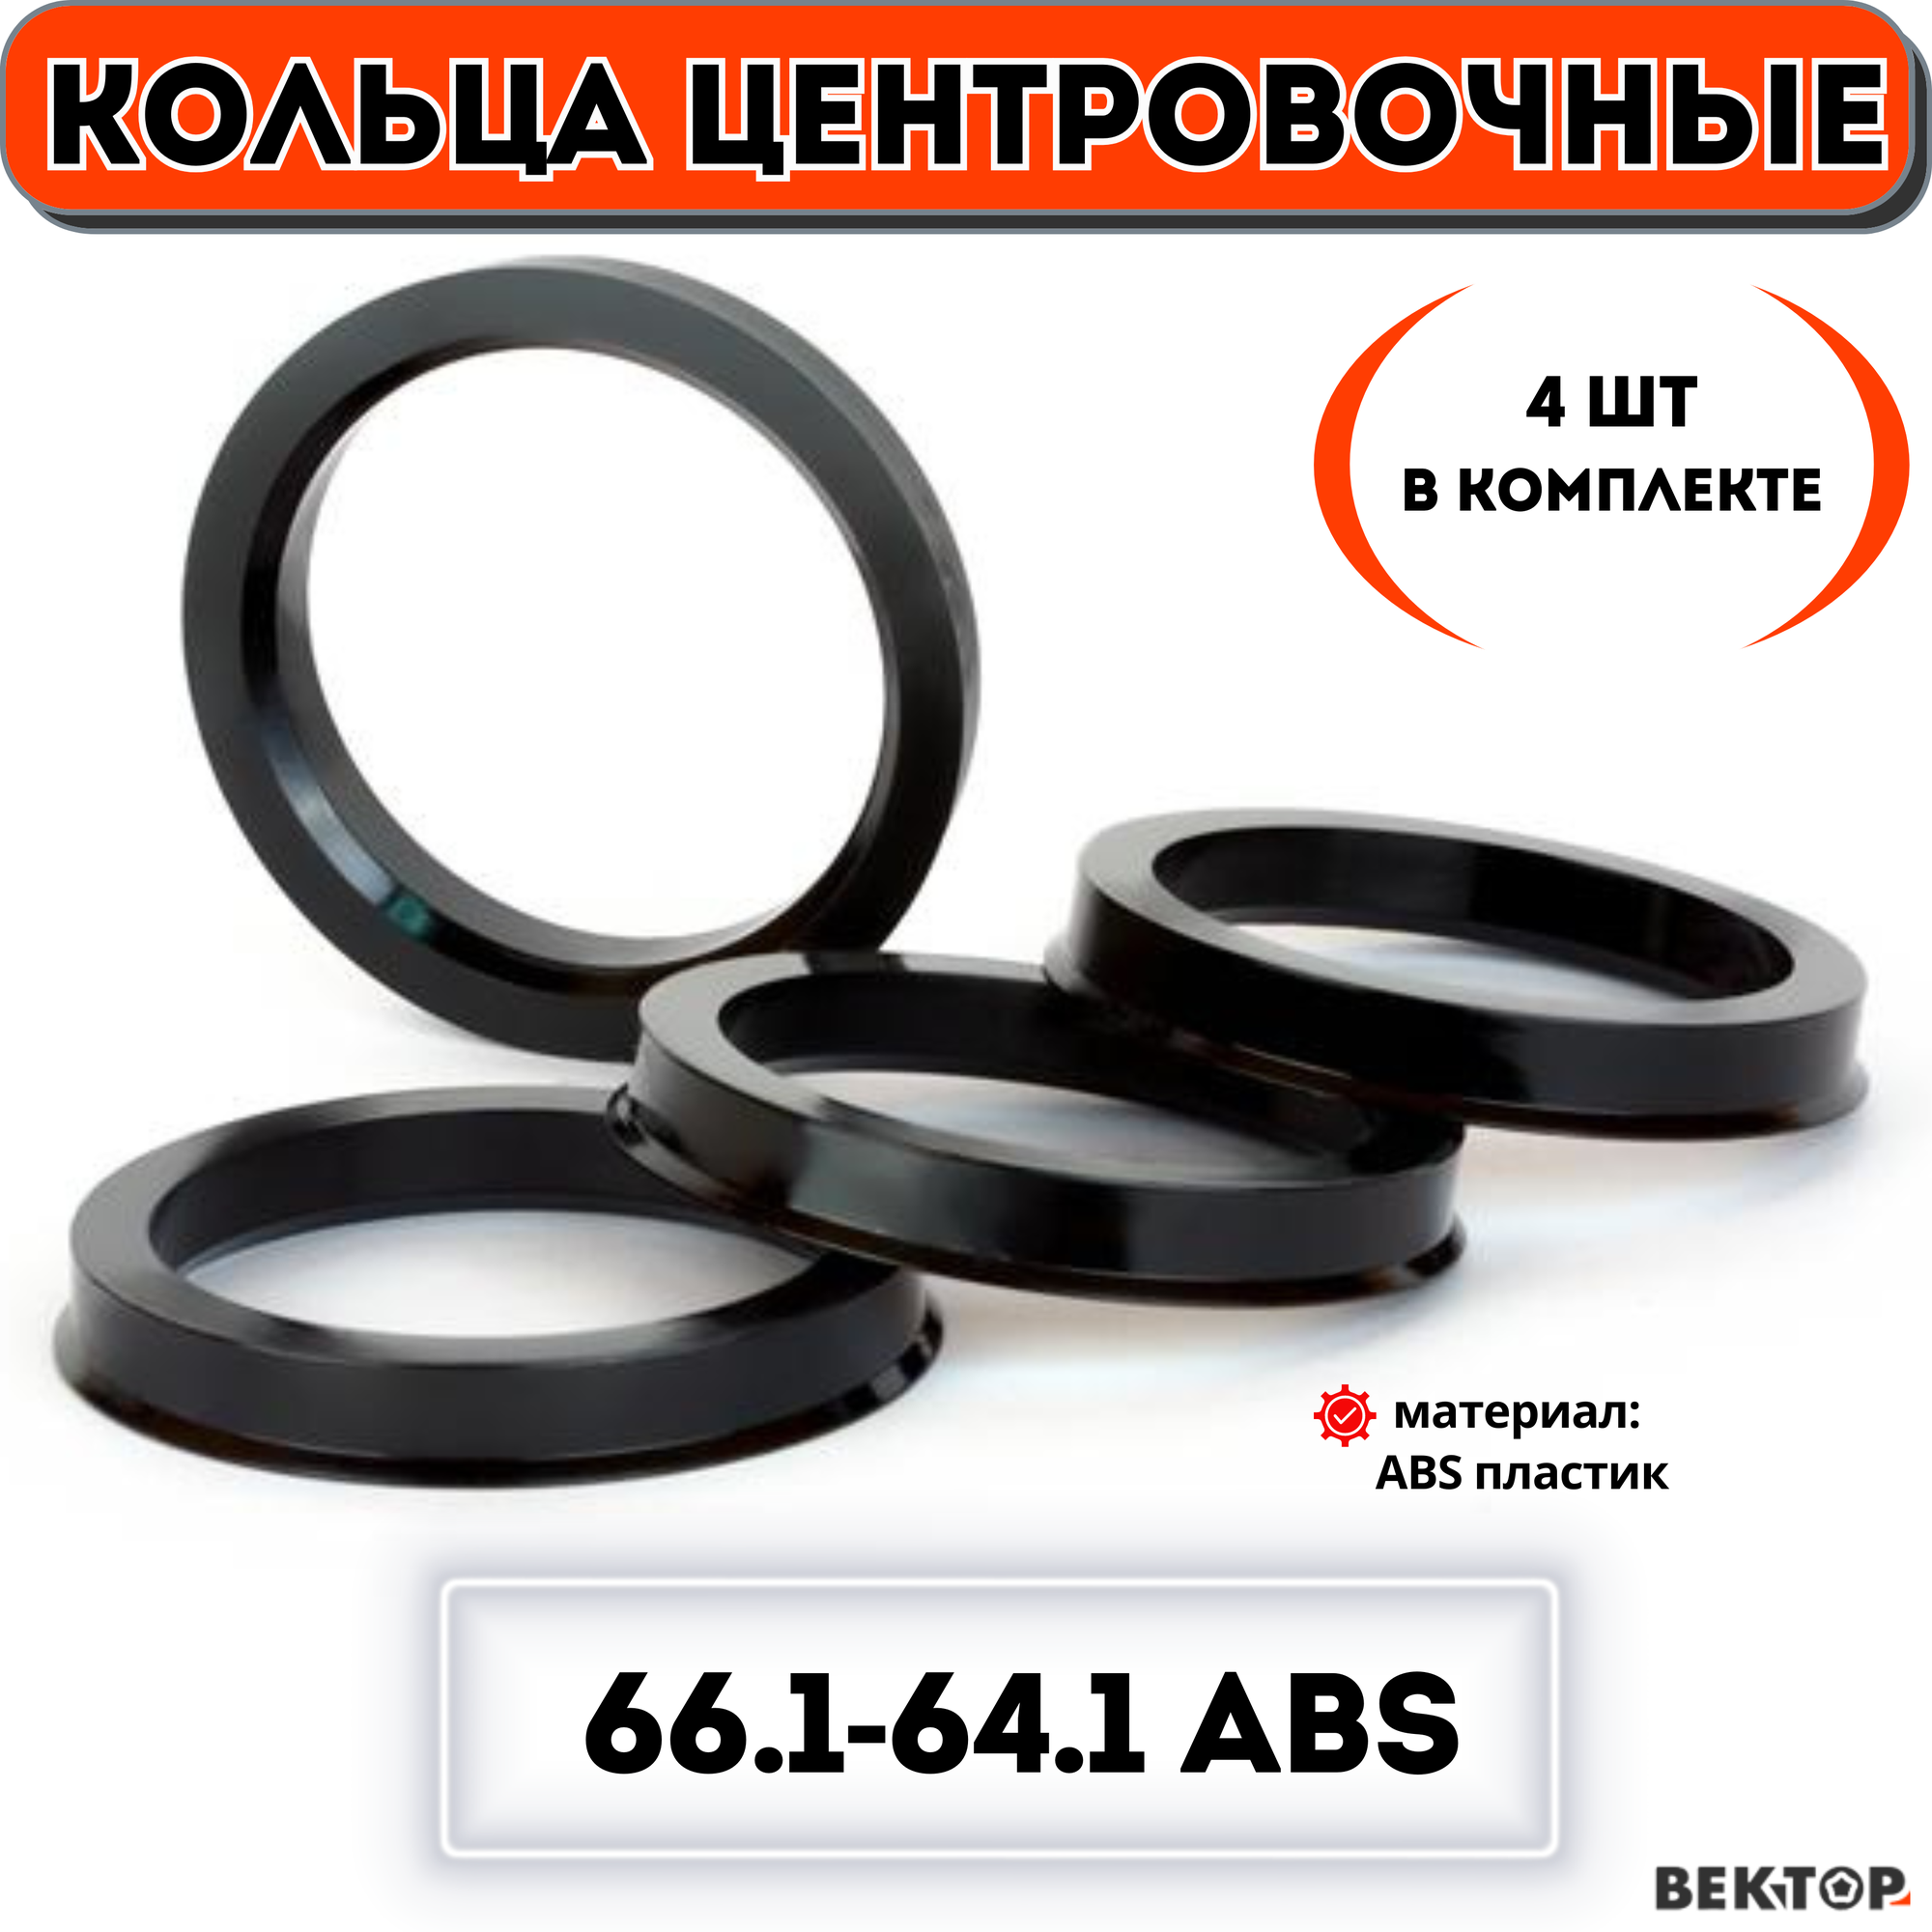 Кольца центровочные для автомобильных дисков 66.1-64.1 ABS (к-т 4 шт.)